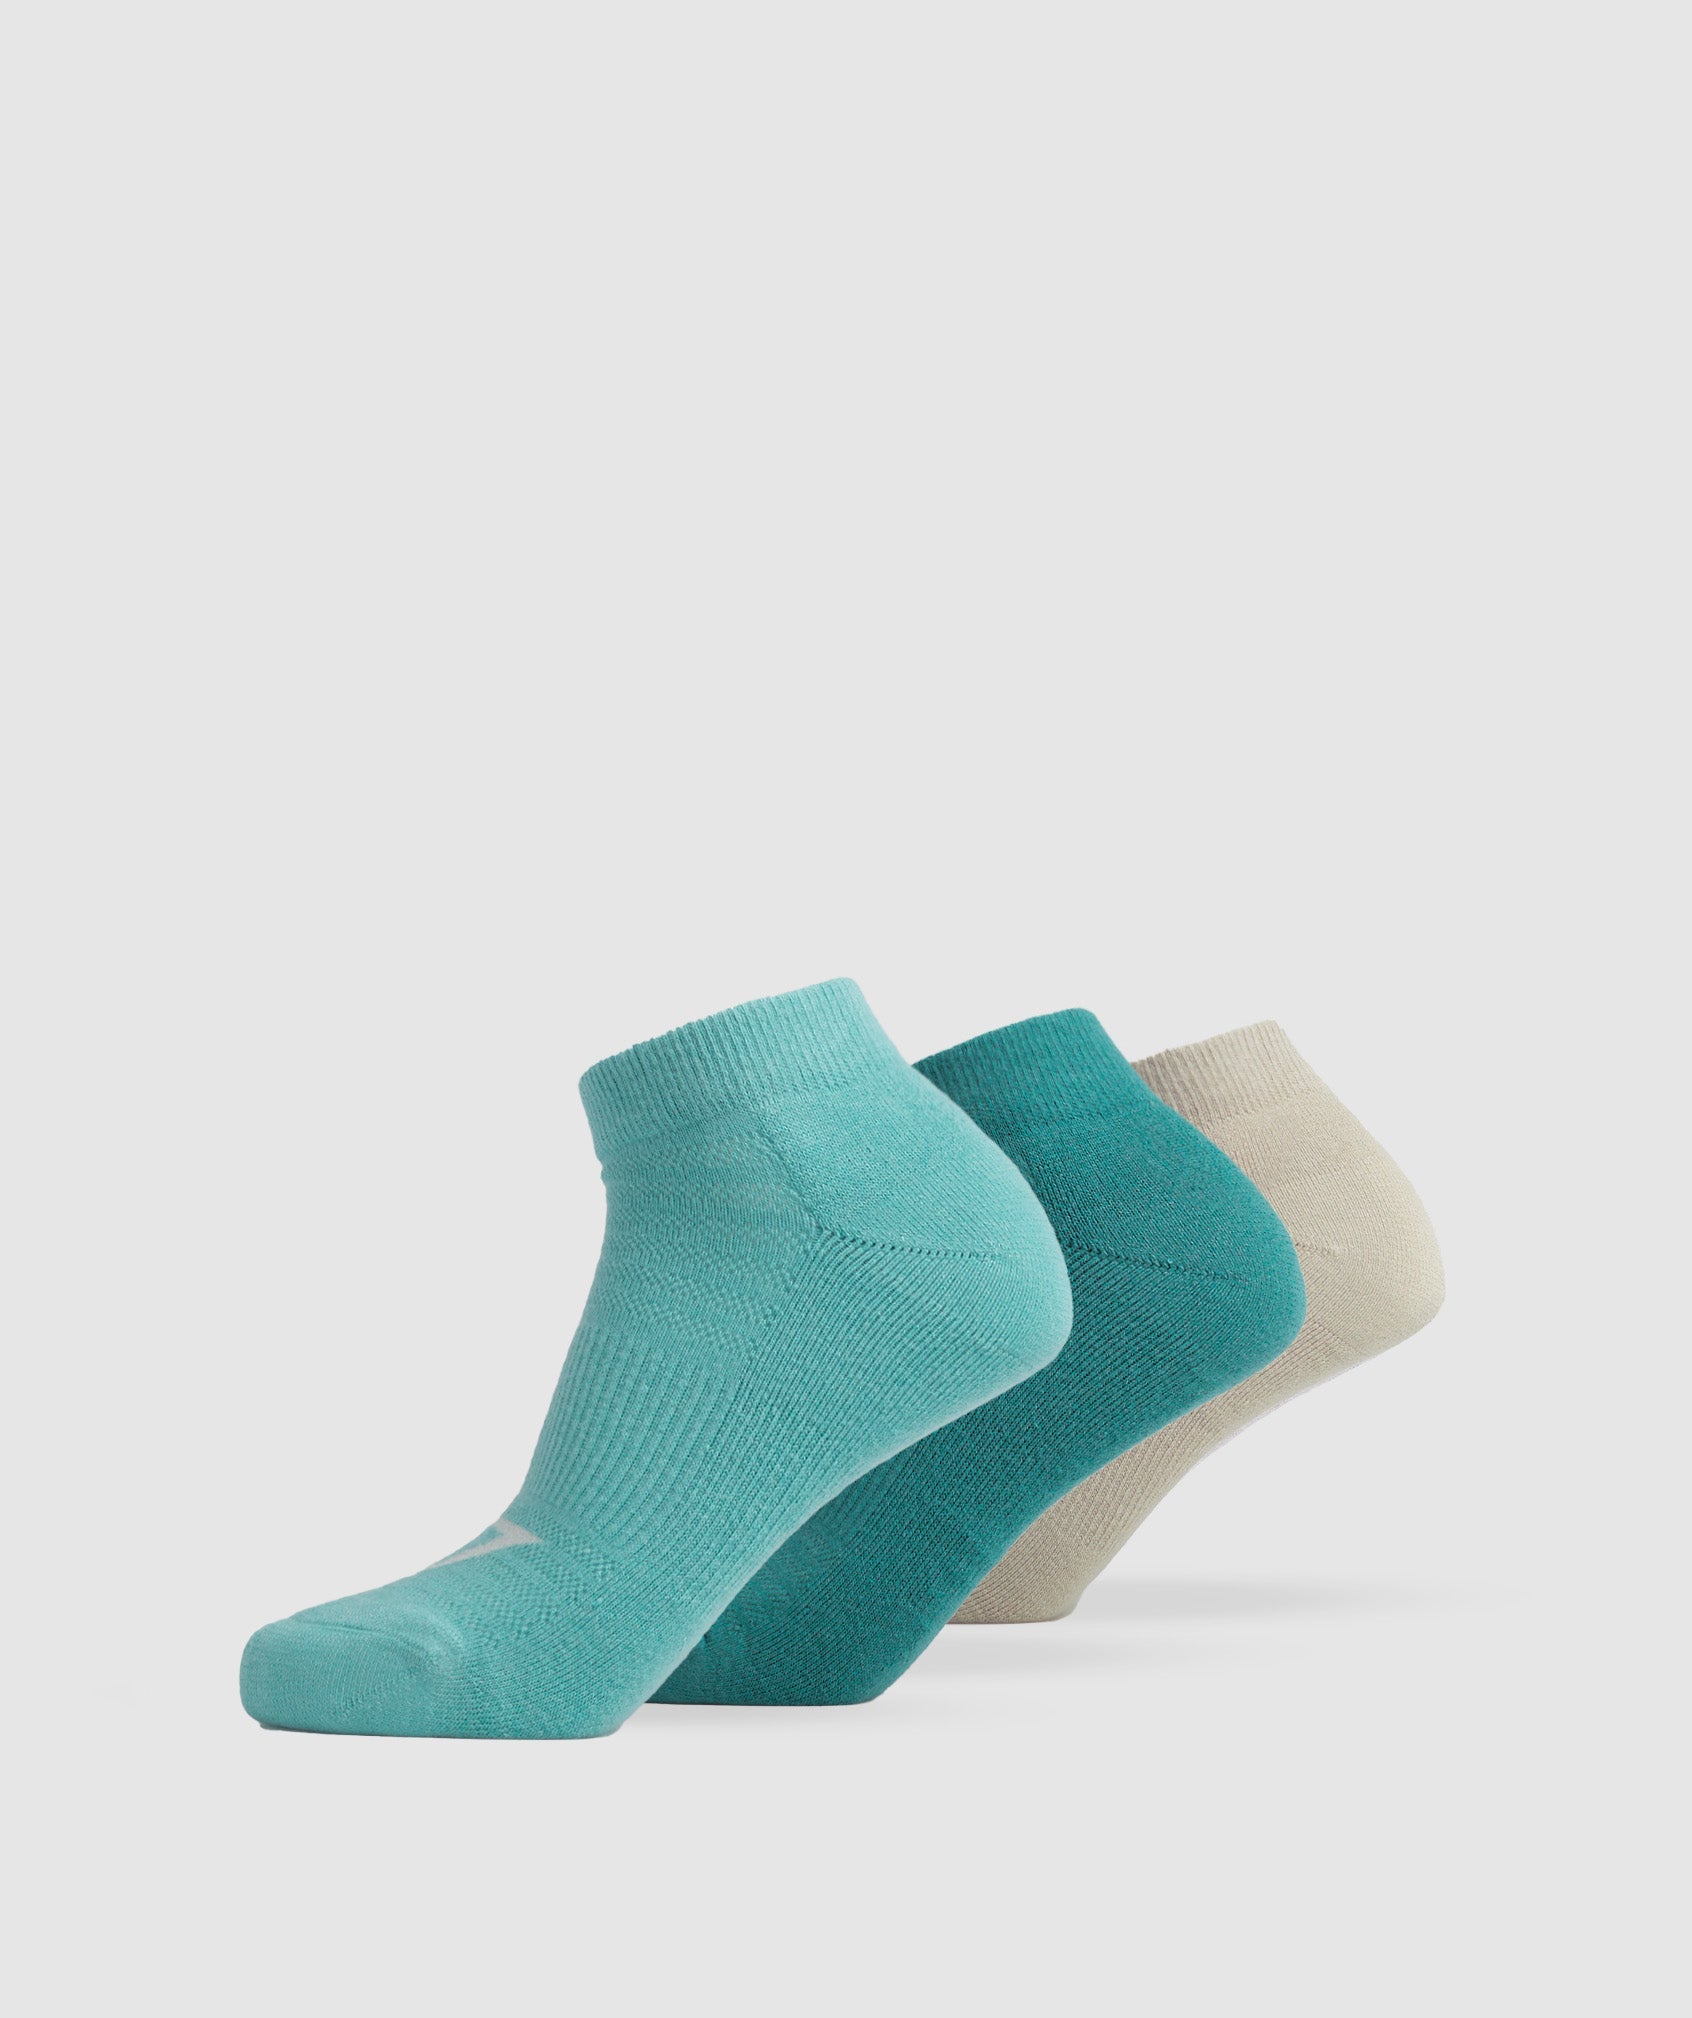 Ankle Socks 3pk in Blue/Jewel Green/Pebble Grey